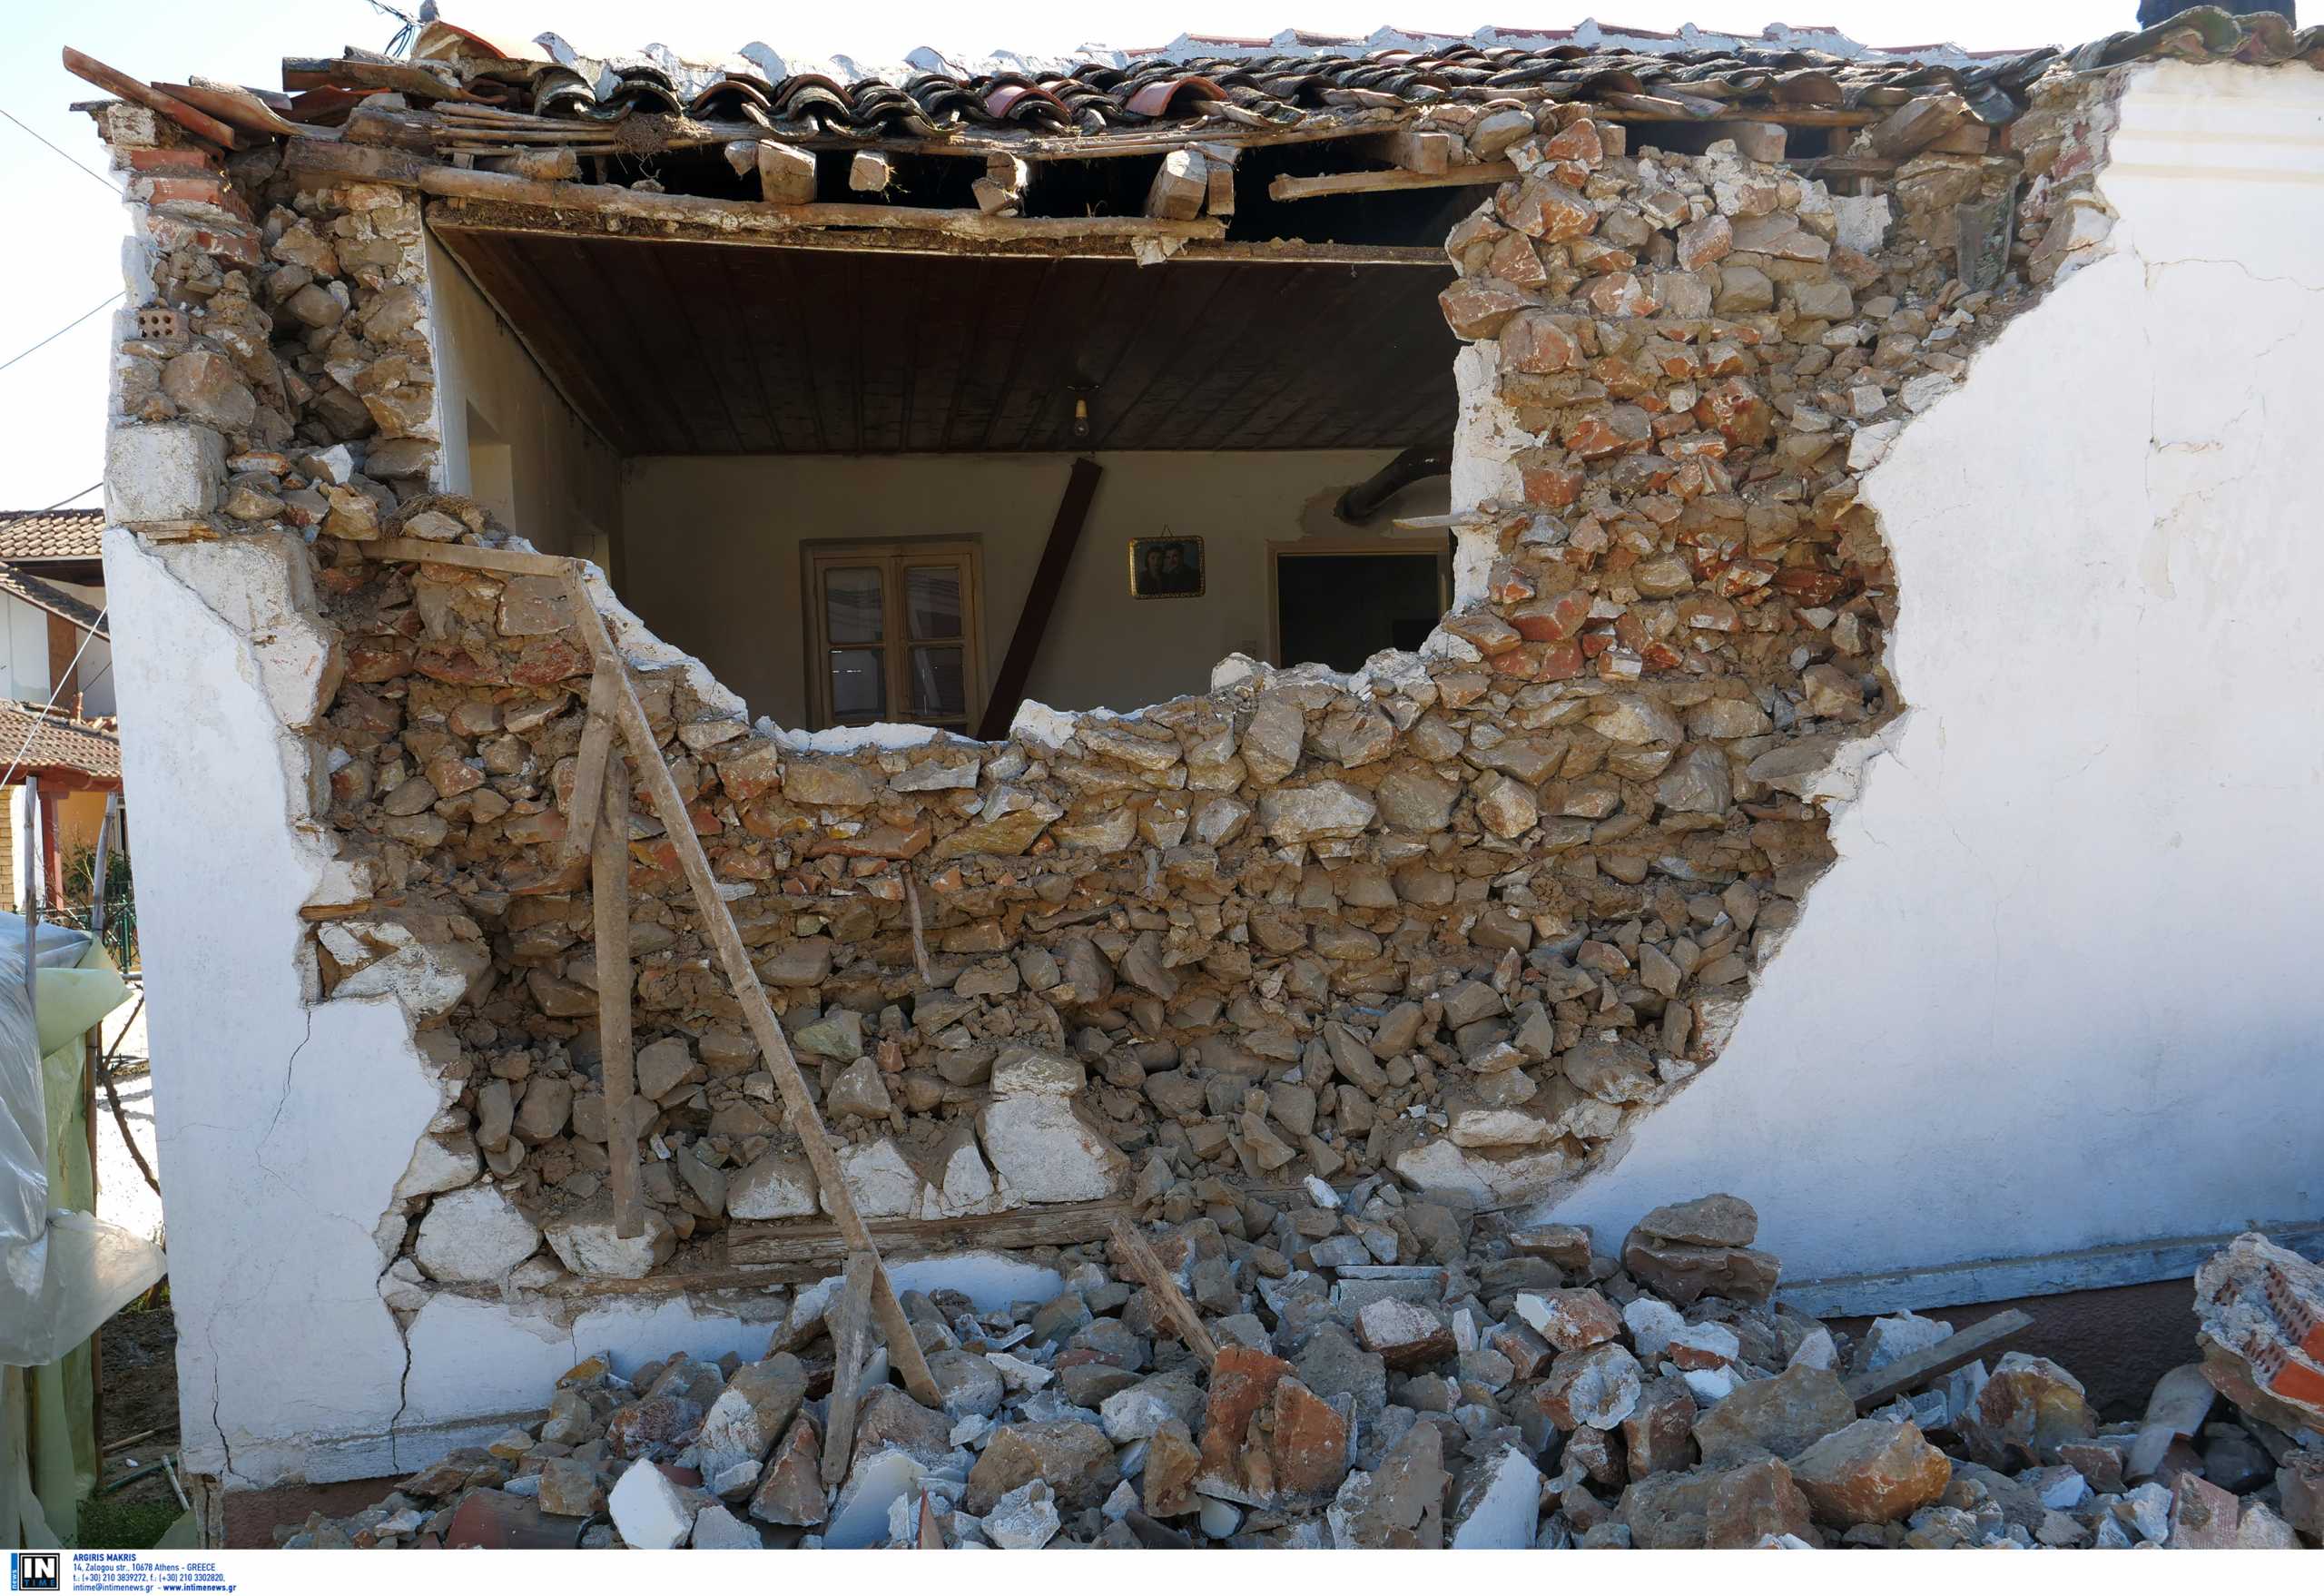 Σεισμός στην Ελασσόνα – Λέκκας: Μη αναμενόμενη δραστηριότητα